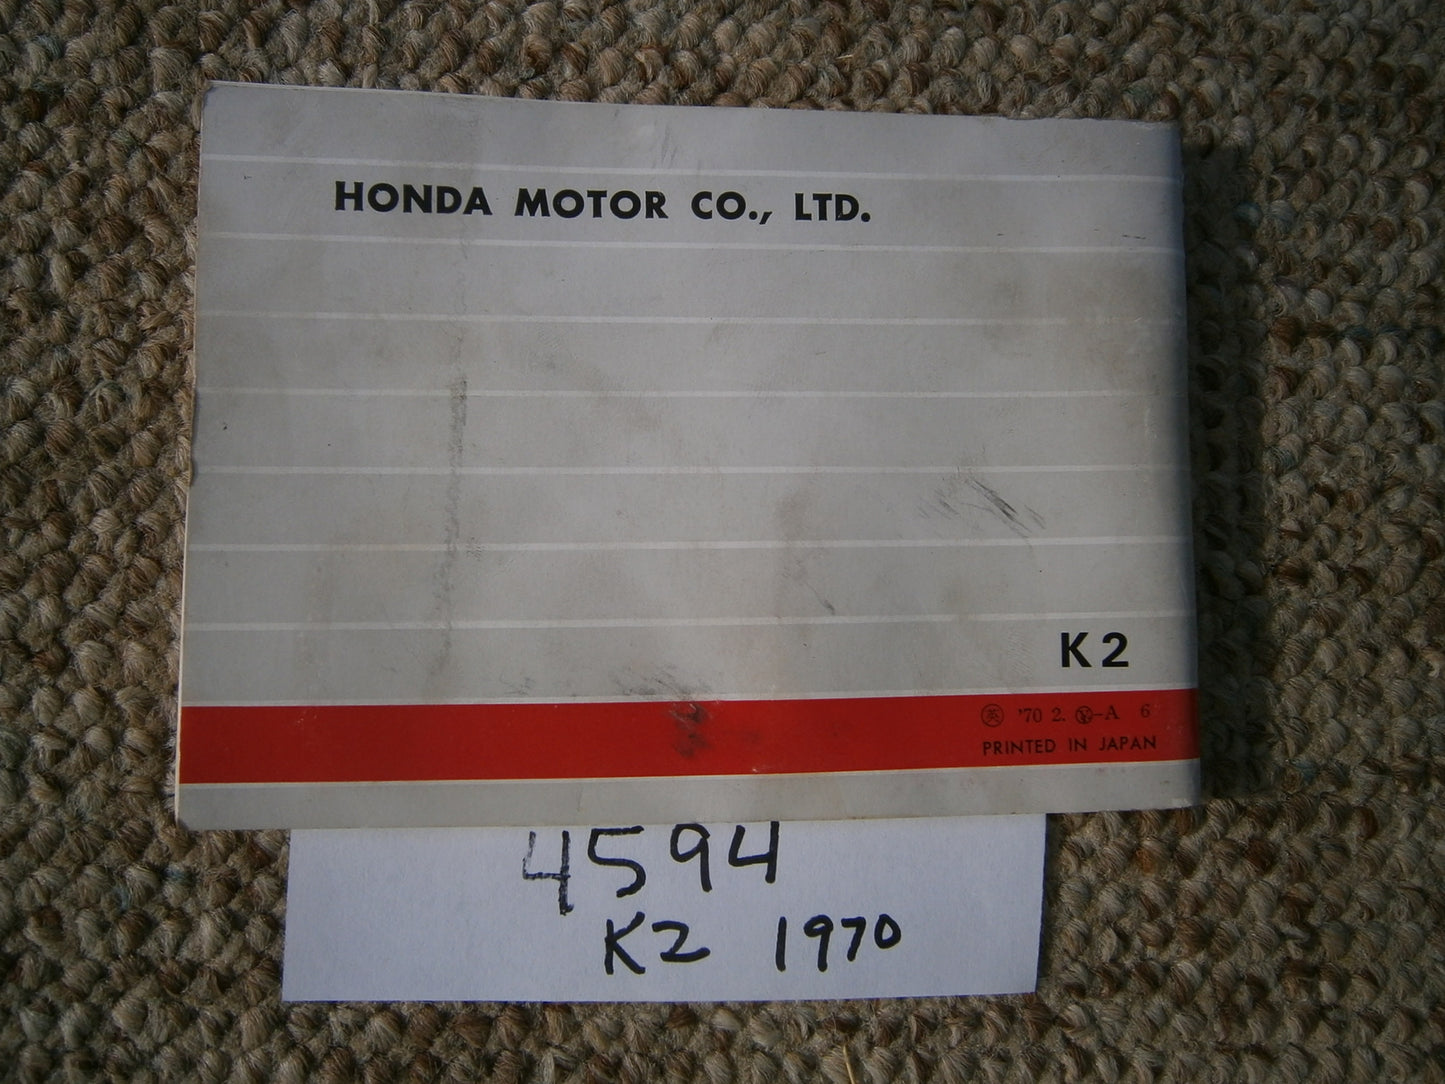 Honda CB350K2 1970 manual 4594